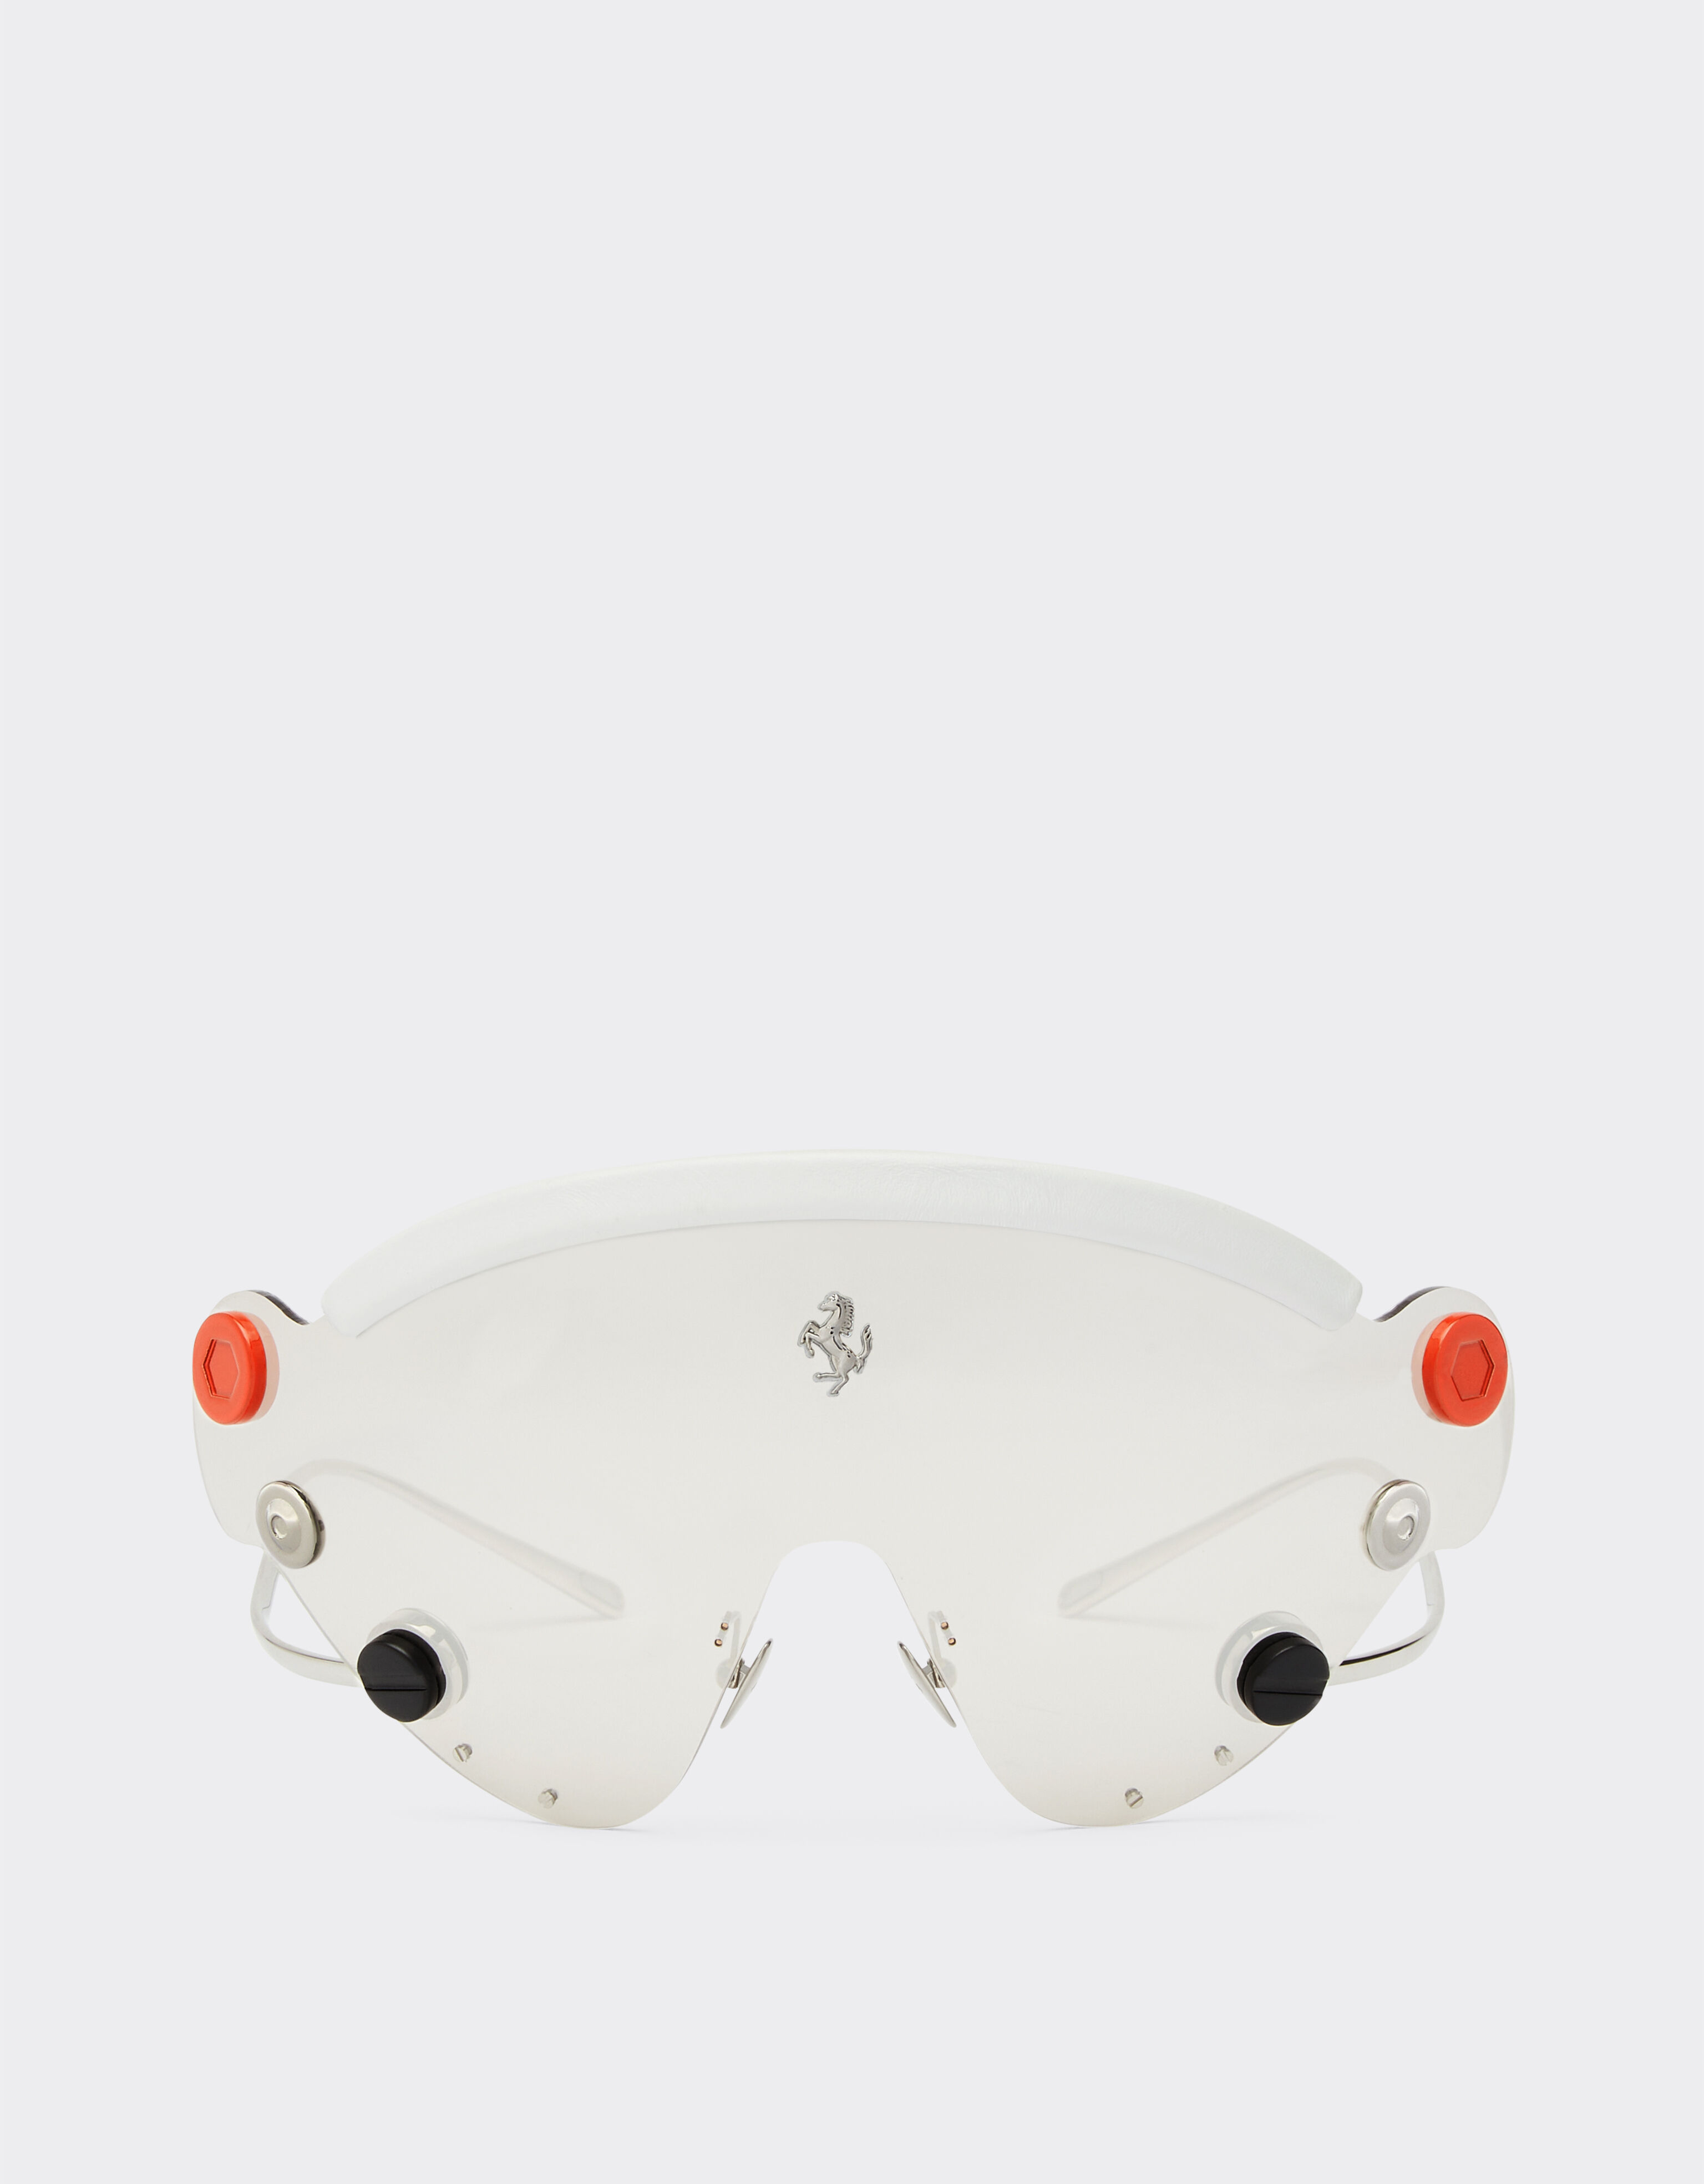 Ferrari Lunettes de soleil masque Limited Edition Ferrari en métal avec masque argenté effet miroir Argent F1248f